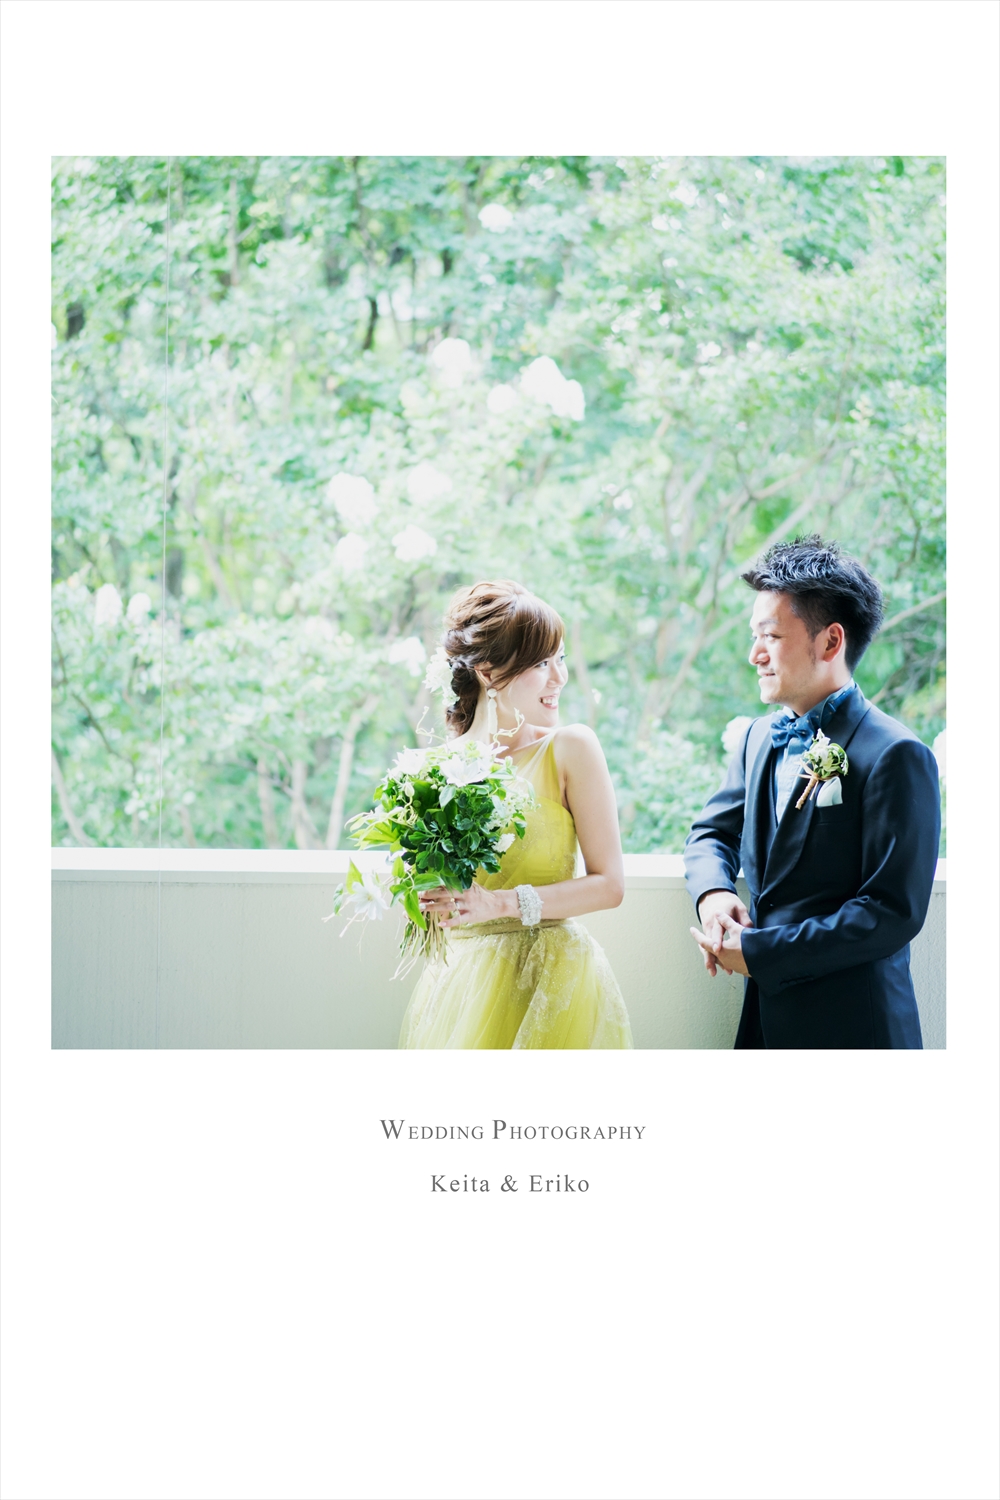 太閤園桜苑でのウェディングフォト 結婚式ビデオ撮影 写真撮影なら月山映像へ 大阪 神戸 京都